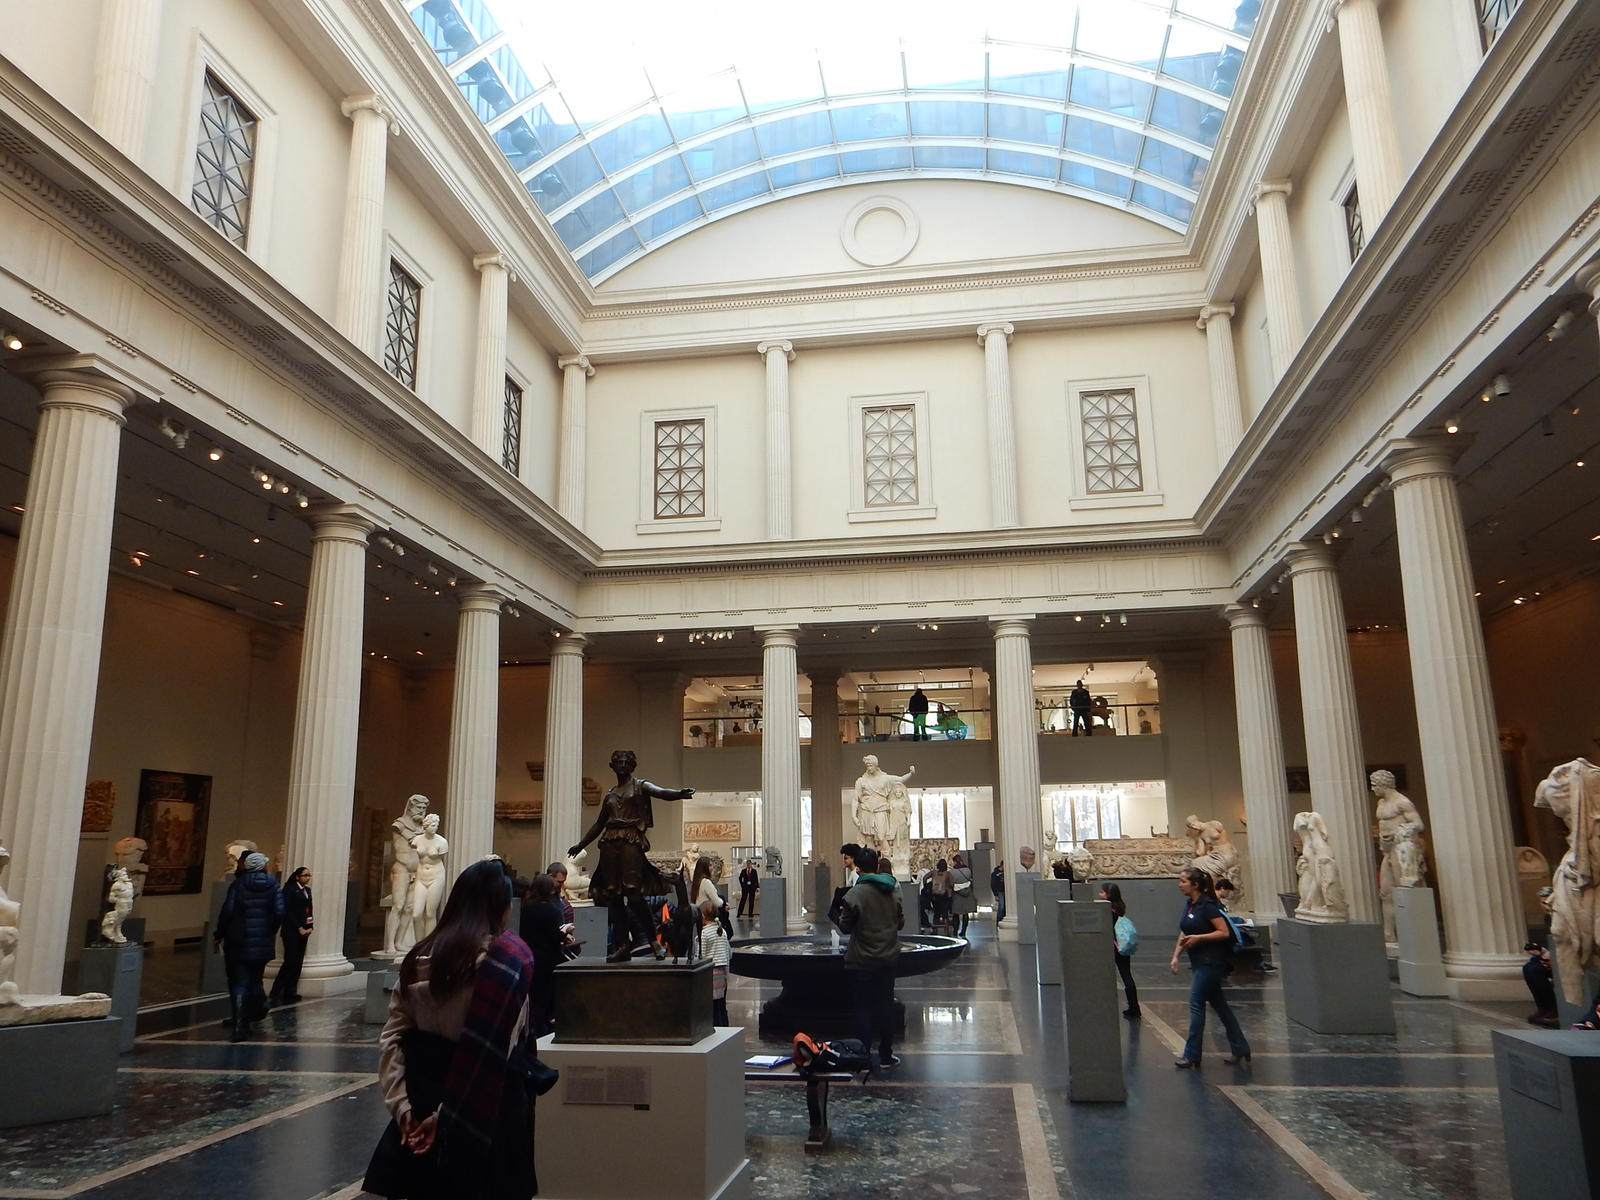 Αίθουσα ελληνικών και ρωμαϊκών αρχαιοτήτων του Μητροπολιτικού Μουσείου Νέας Υόρκης